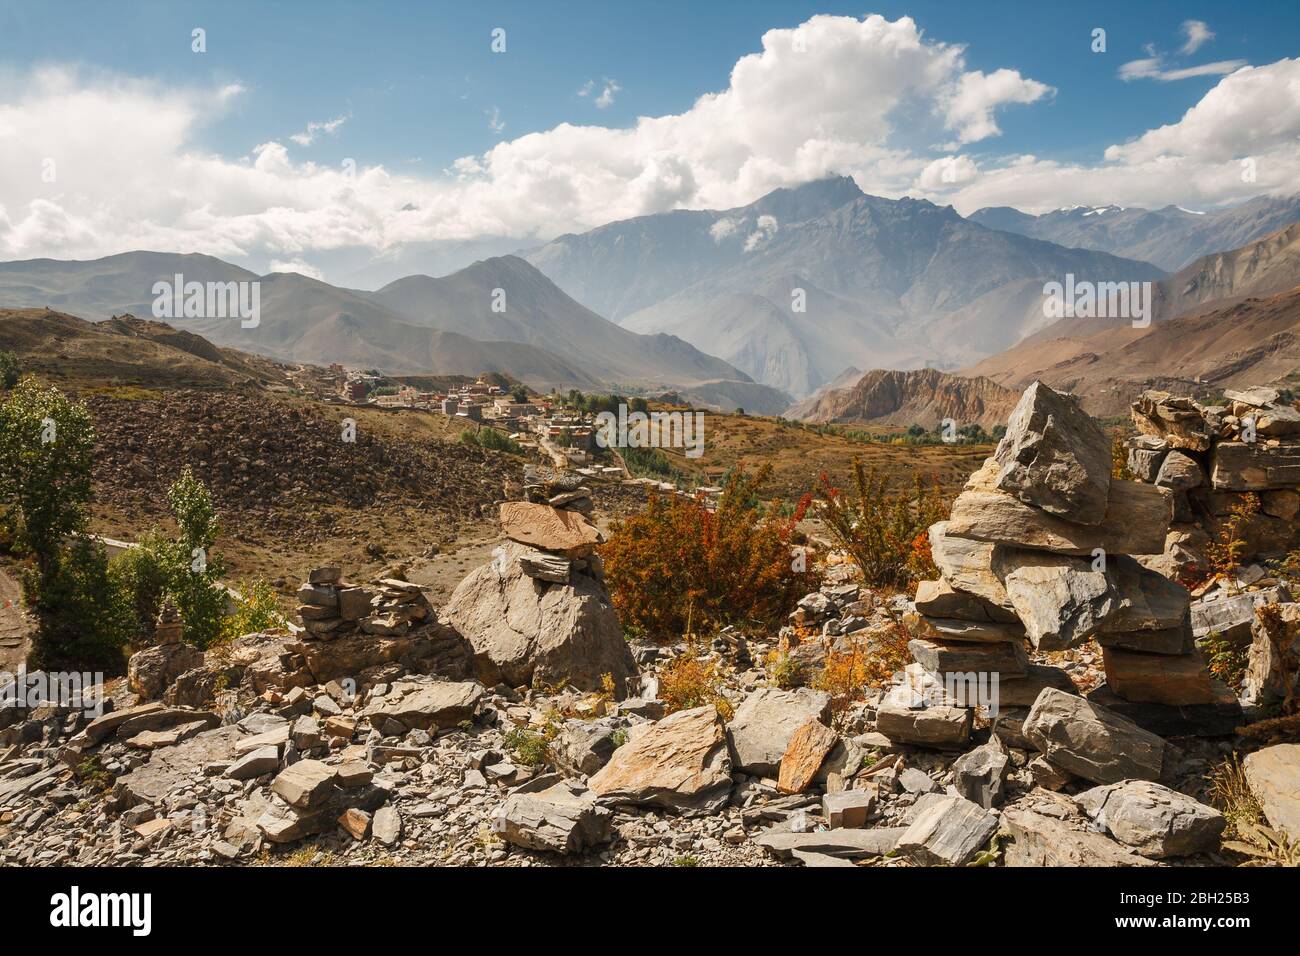 Paesaggio Himalayano, cairns sullo sfondo delle catene montuose e villaggio di Ranipauwa. Vista dal Monastero di Muktinath, Lower Mustang, Nepal Foto Stock